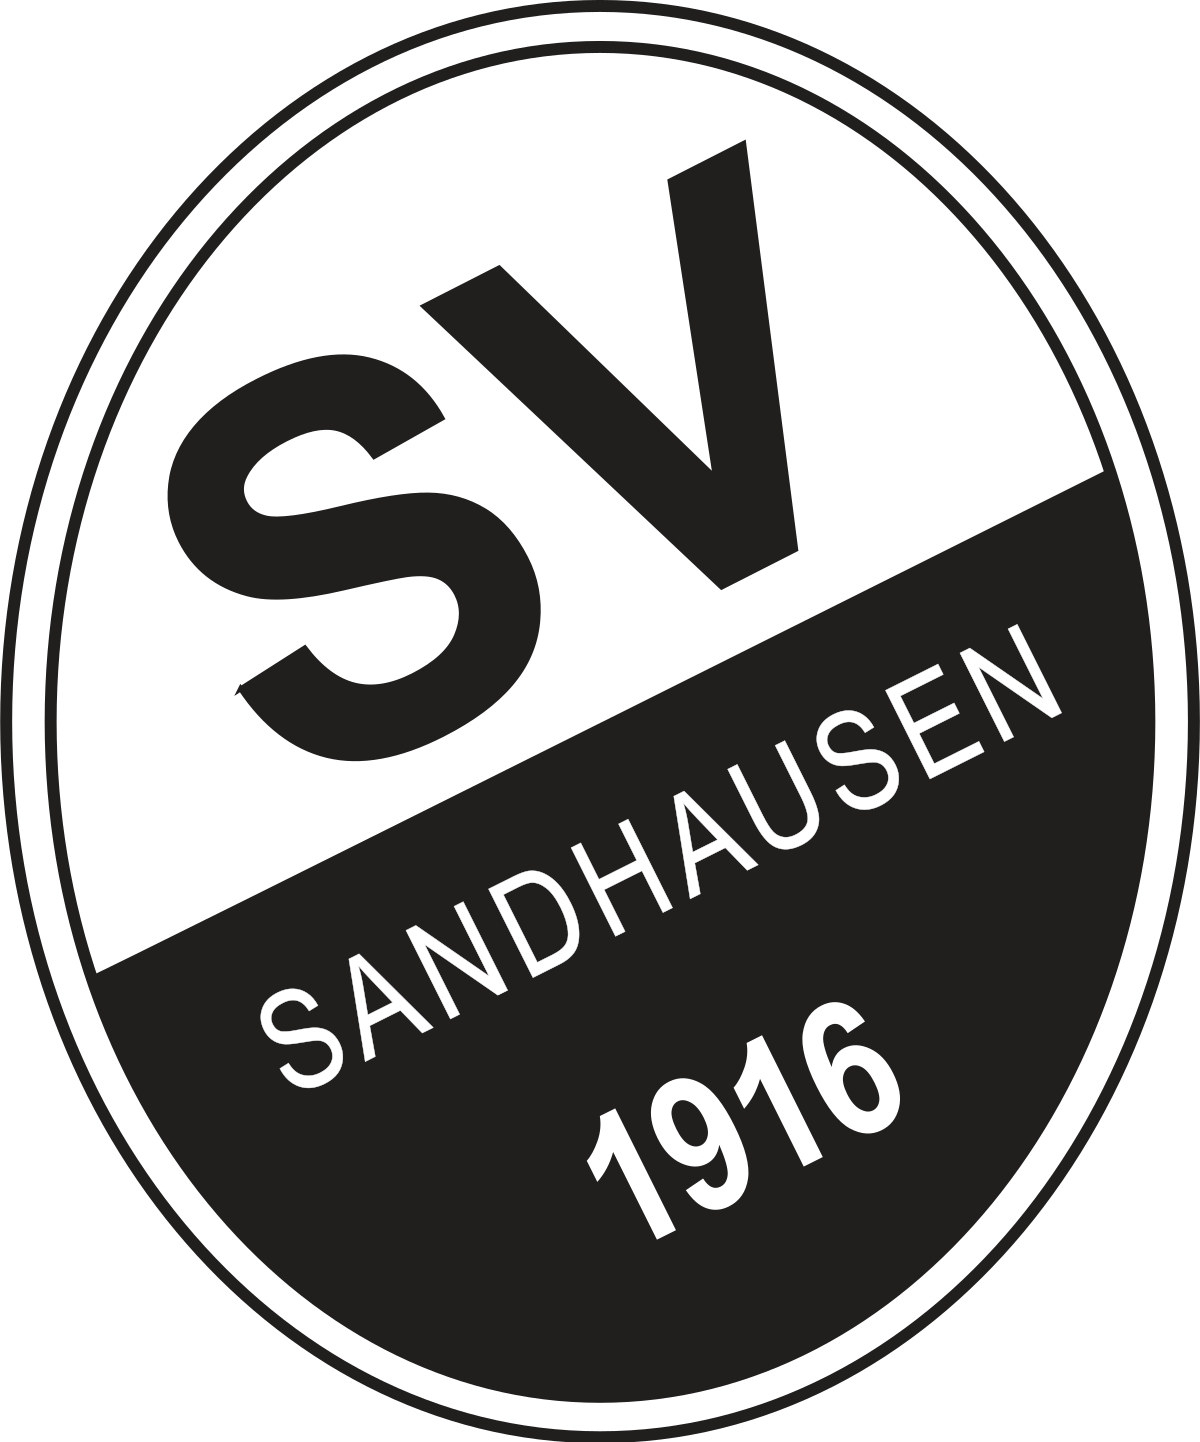 СВ Зандхаузен U19 - Logo